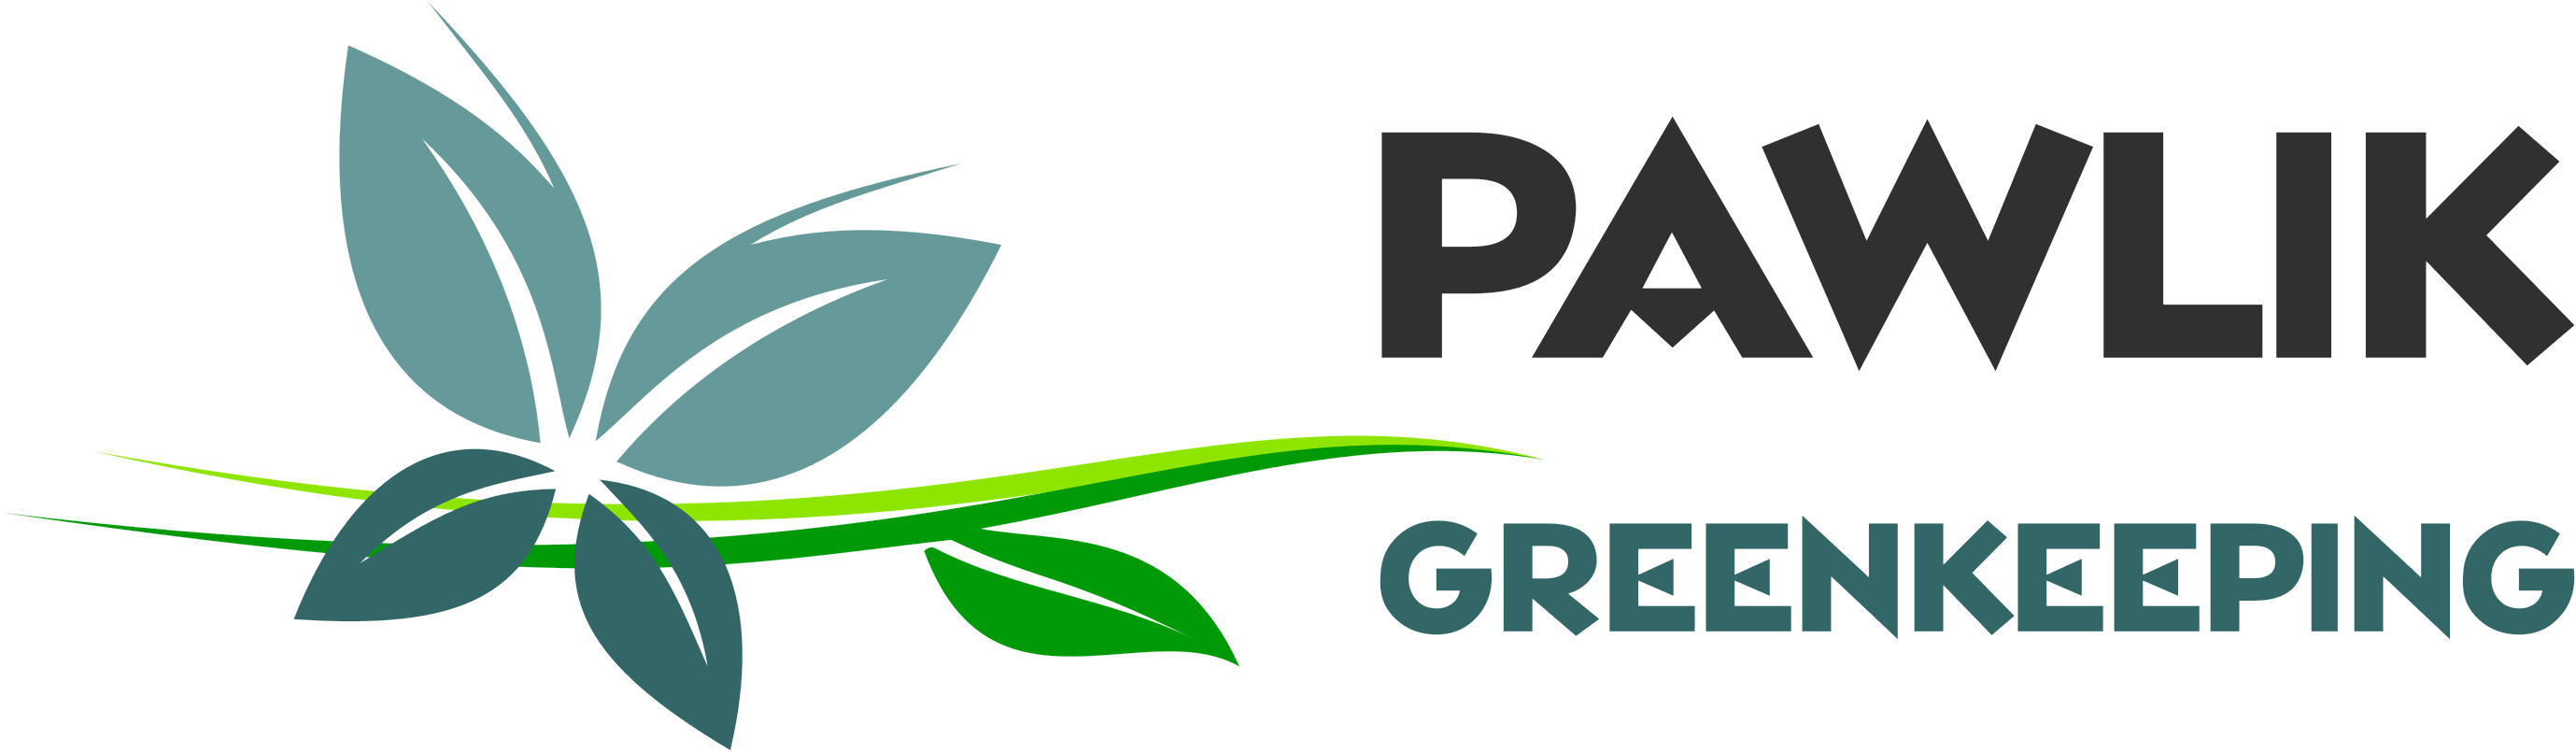 Pawlik - Greenkeeping - trawniki, ogrody, prace ziemne Paweł Wójcik